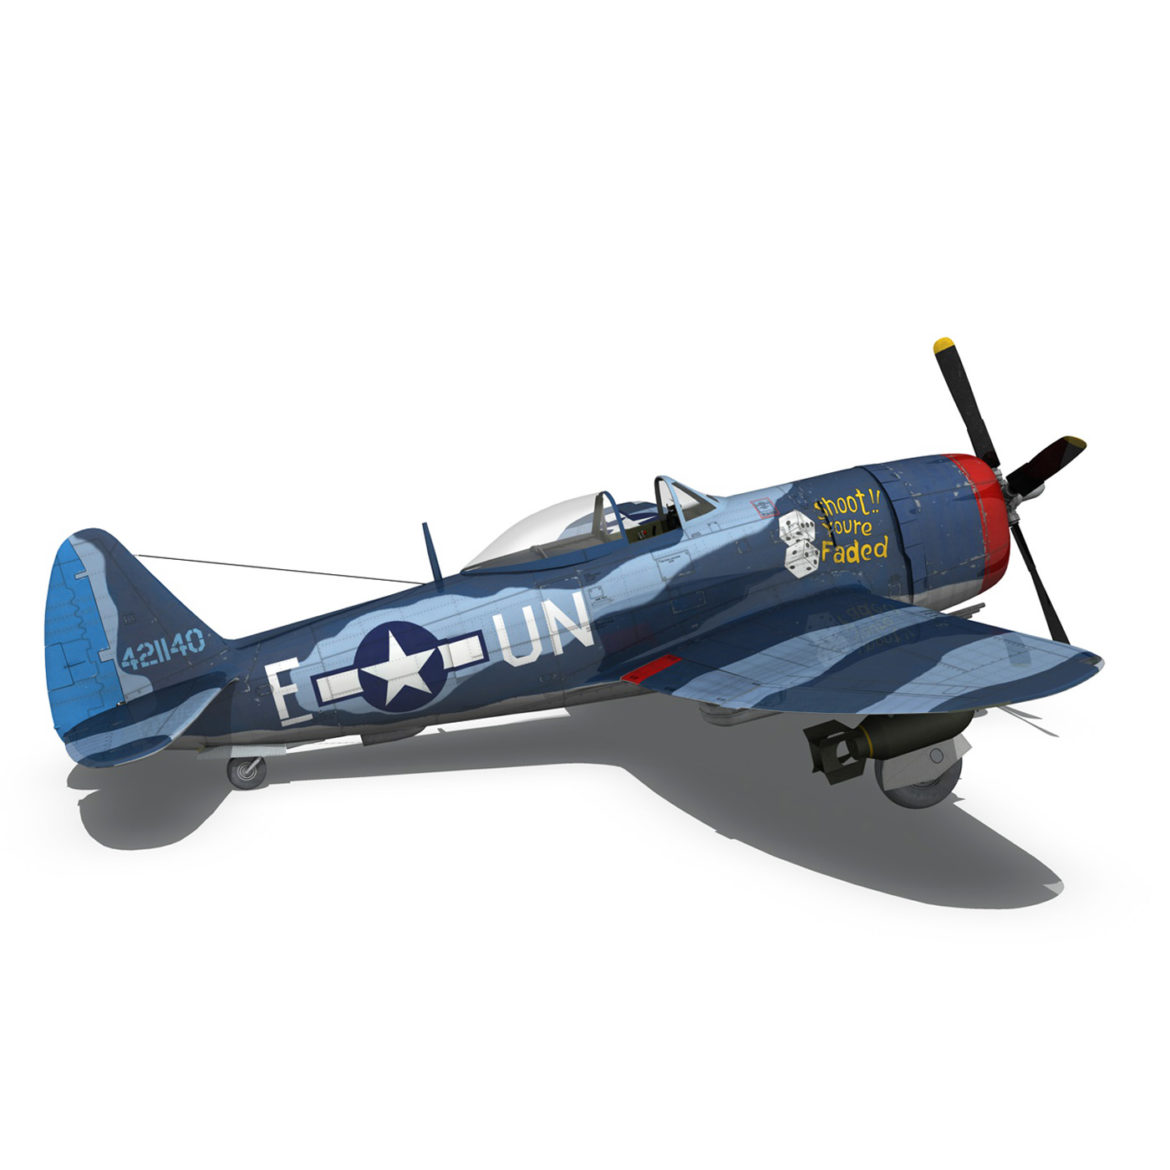 republic p-47m thunderbolt – darling dottie 3d model 3ds c4d lwo lw lws obj fbx 303848